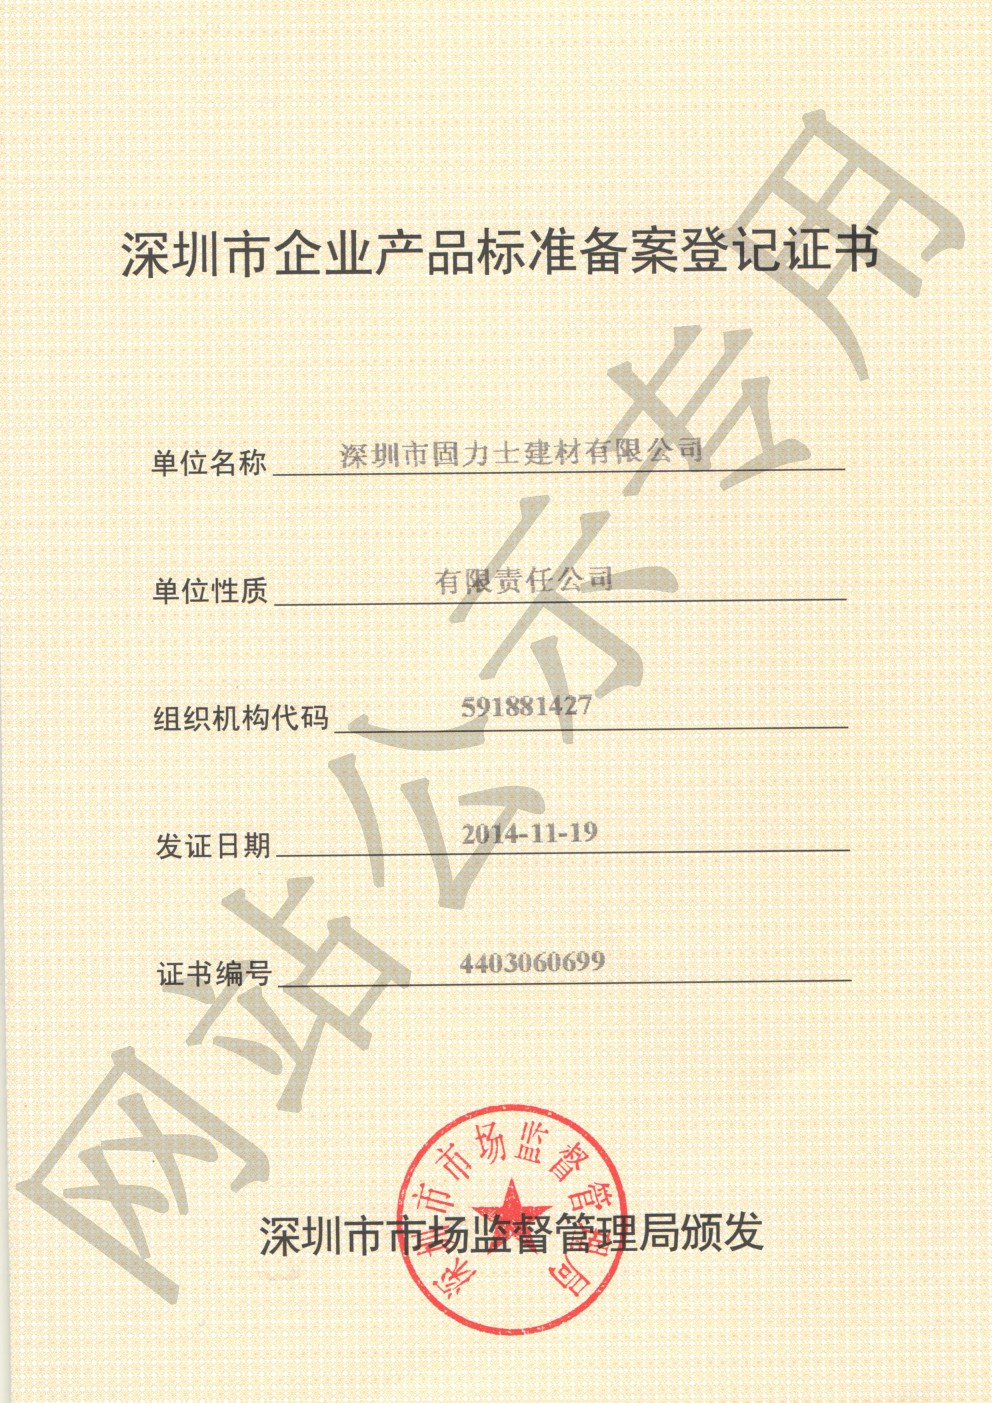 迪庆企业产品标准登记证书